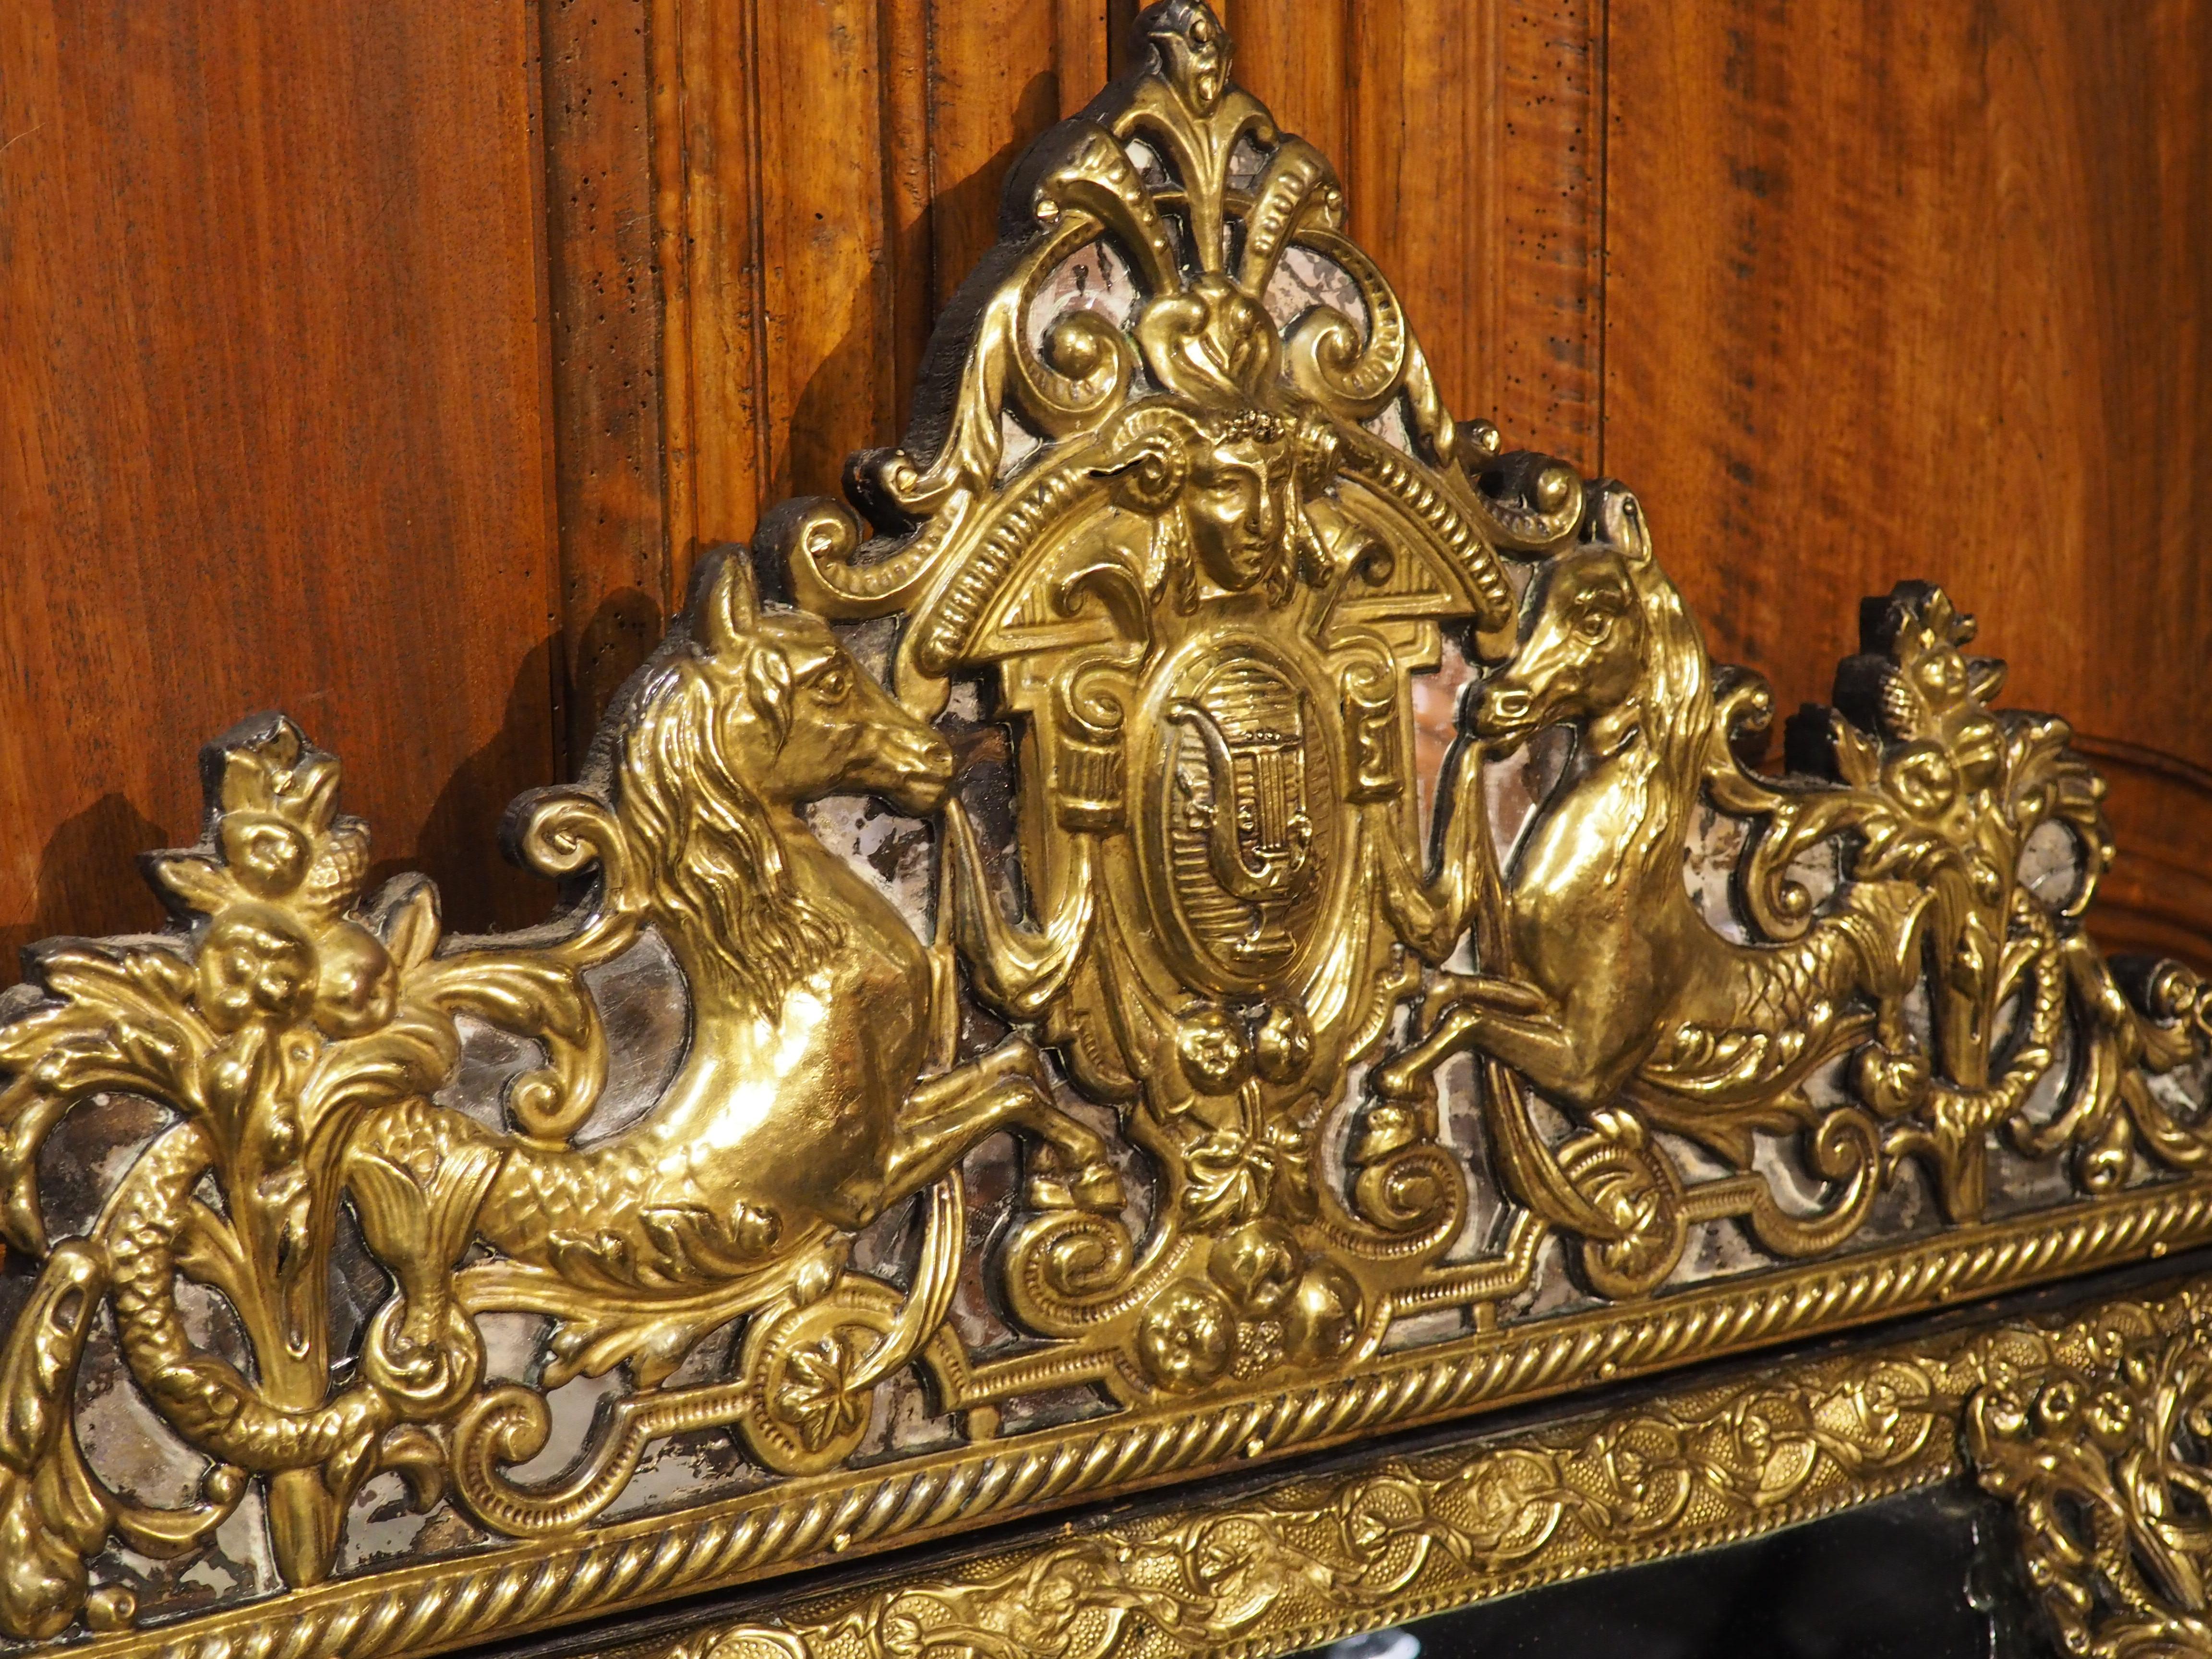 Repoussé Antique Dutch Repousse Cushion Mirror with Lyre and Seahorse Ornamentation